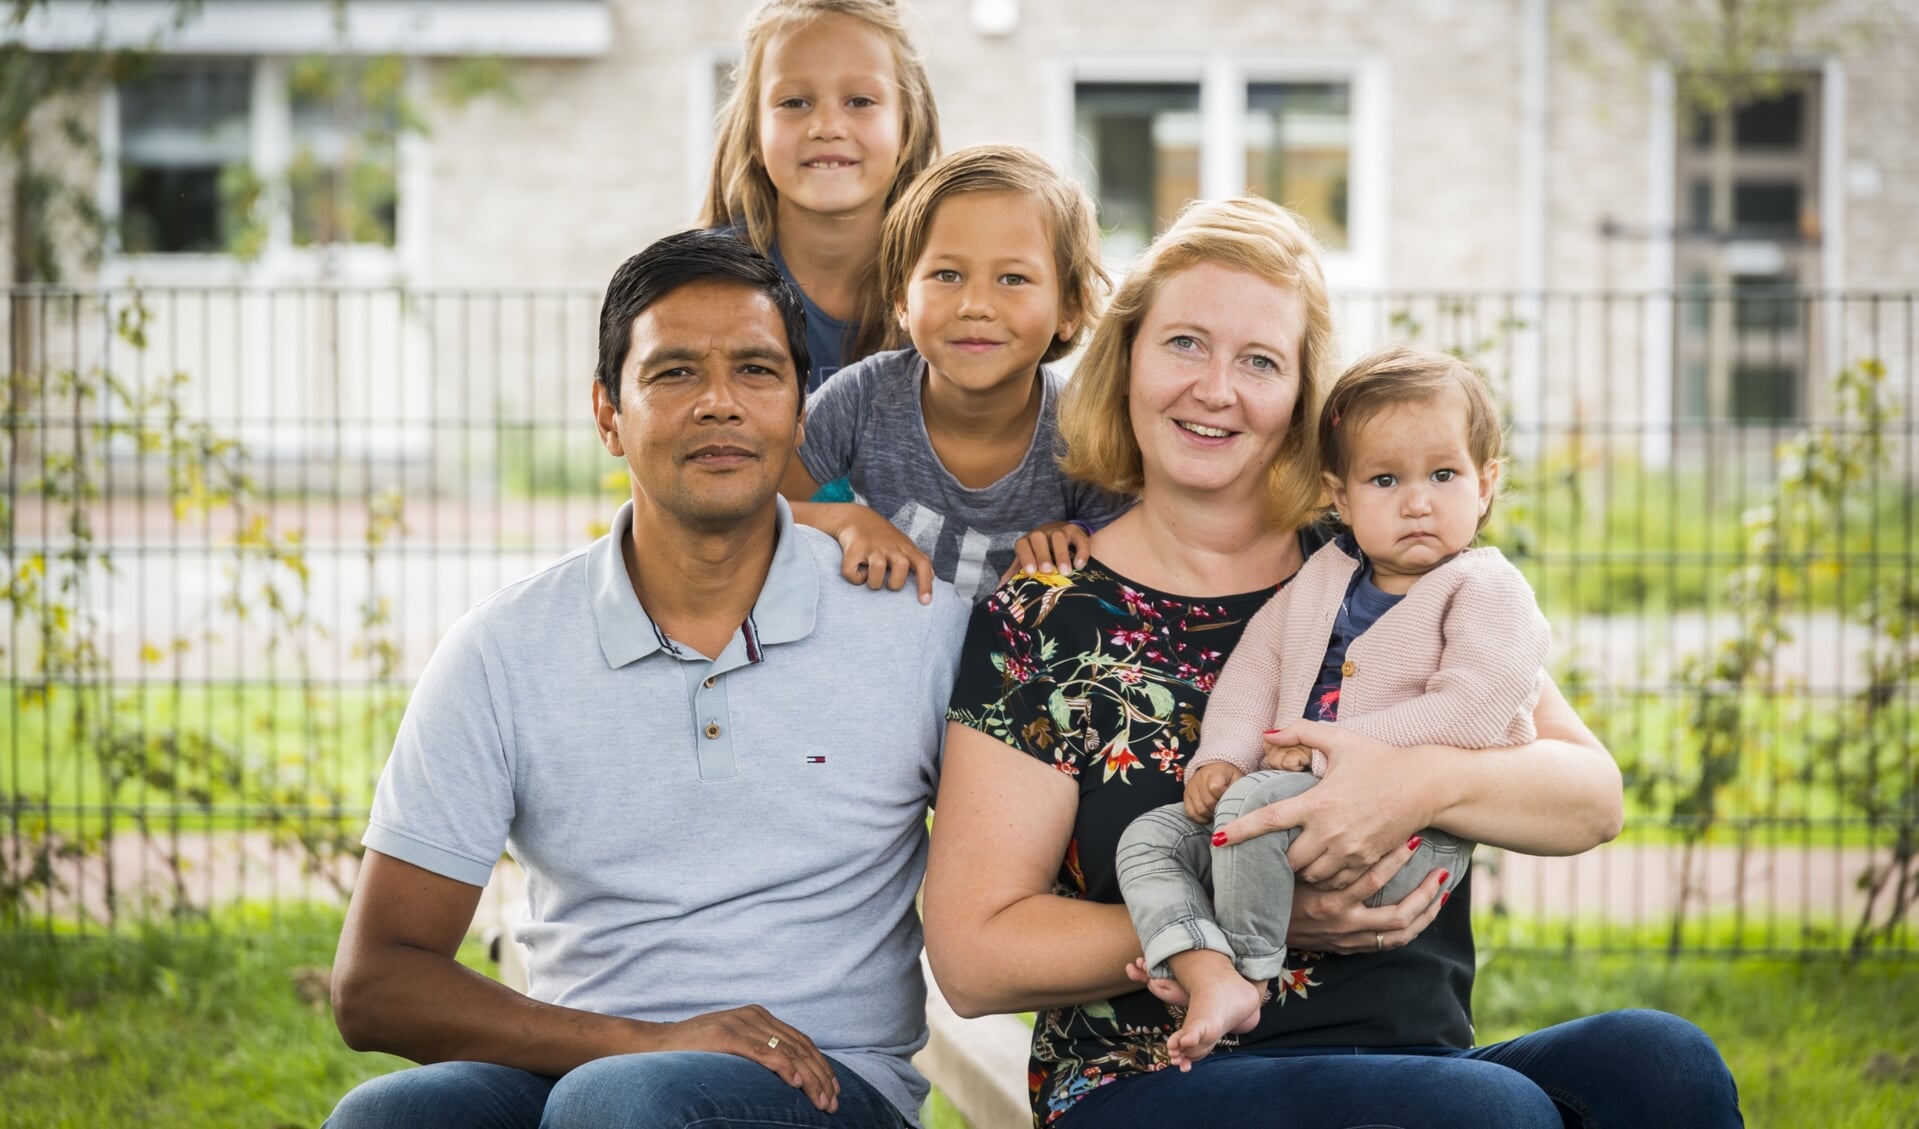 Het gezin van Eekhout, met vader John, Fenne, Thijn en moeder Minke met de kleine Merel op schoot, heeft een zwaar jaar doorgemaakt.